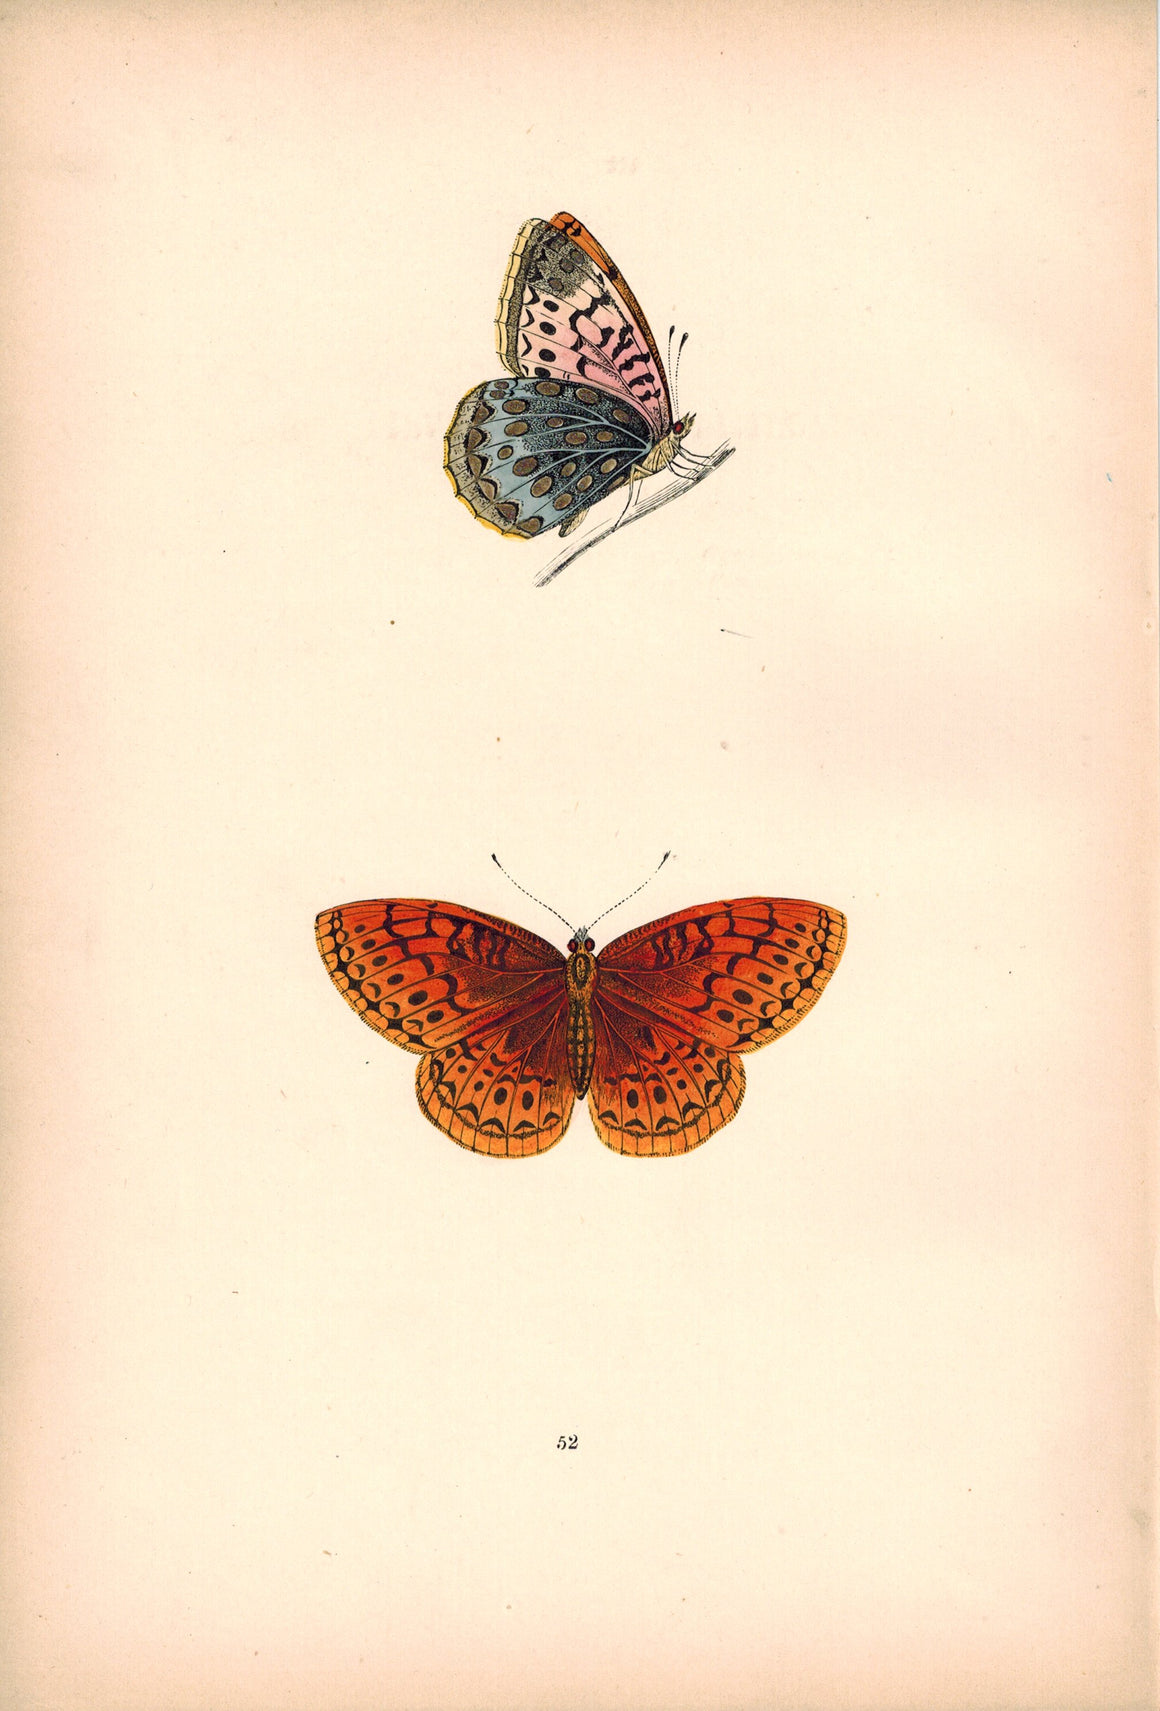 1891 Plate LII - Venus Fritillary - Morris 